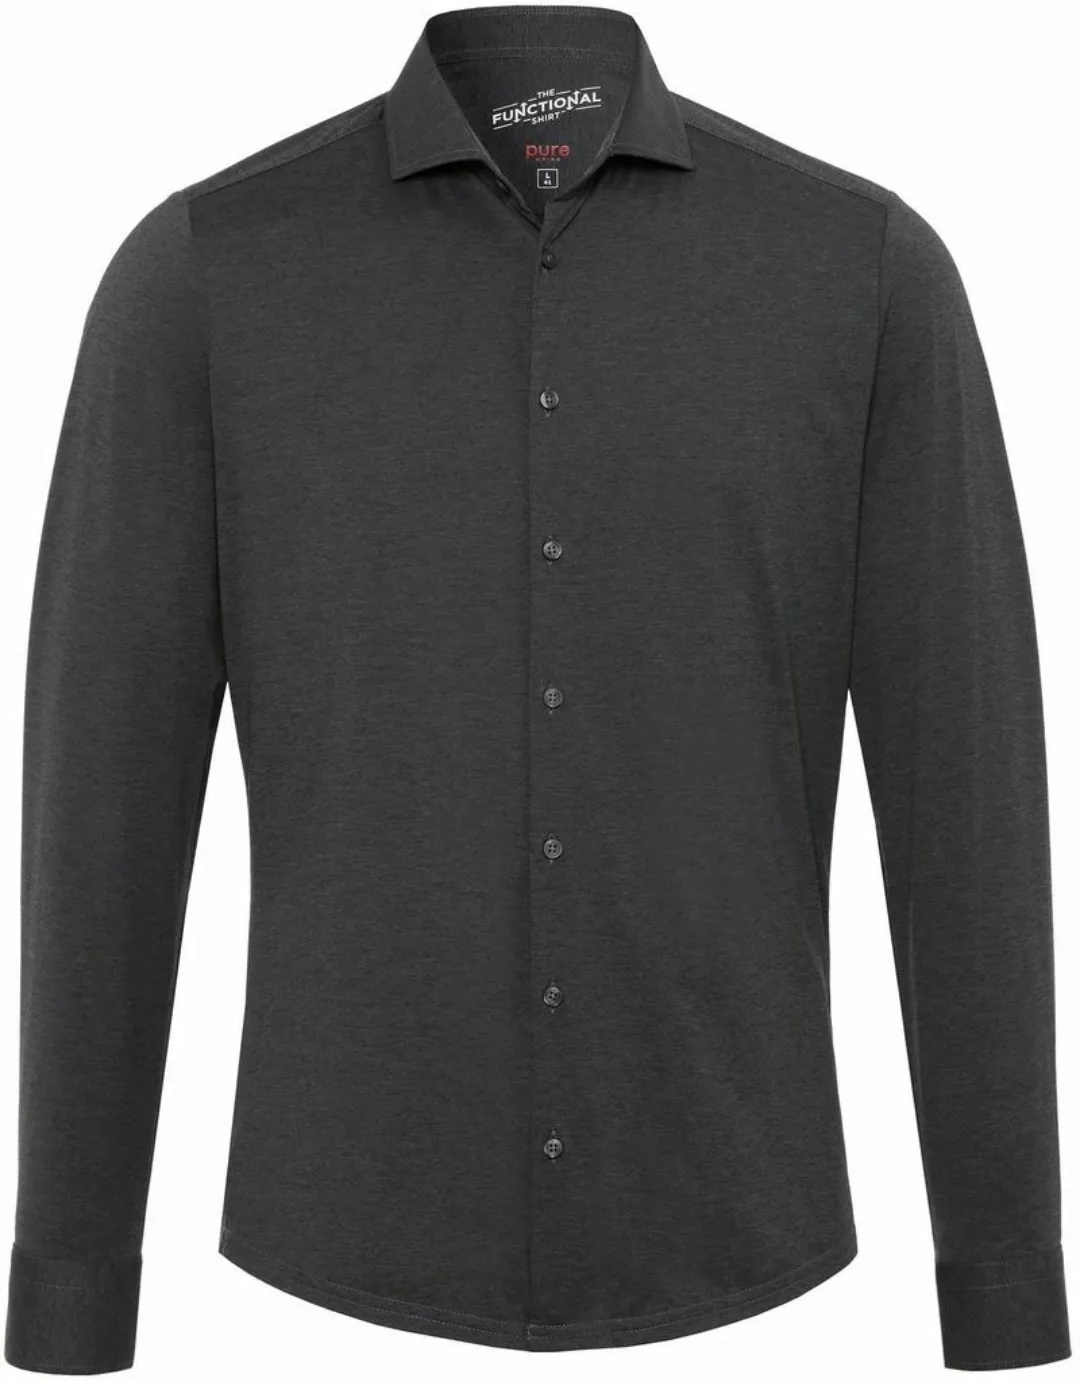 Pure H.Tico The Functional Dunkel Grau Shirt - Größe 41 günstig online kaufen